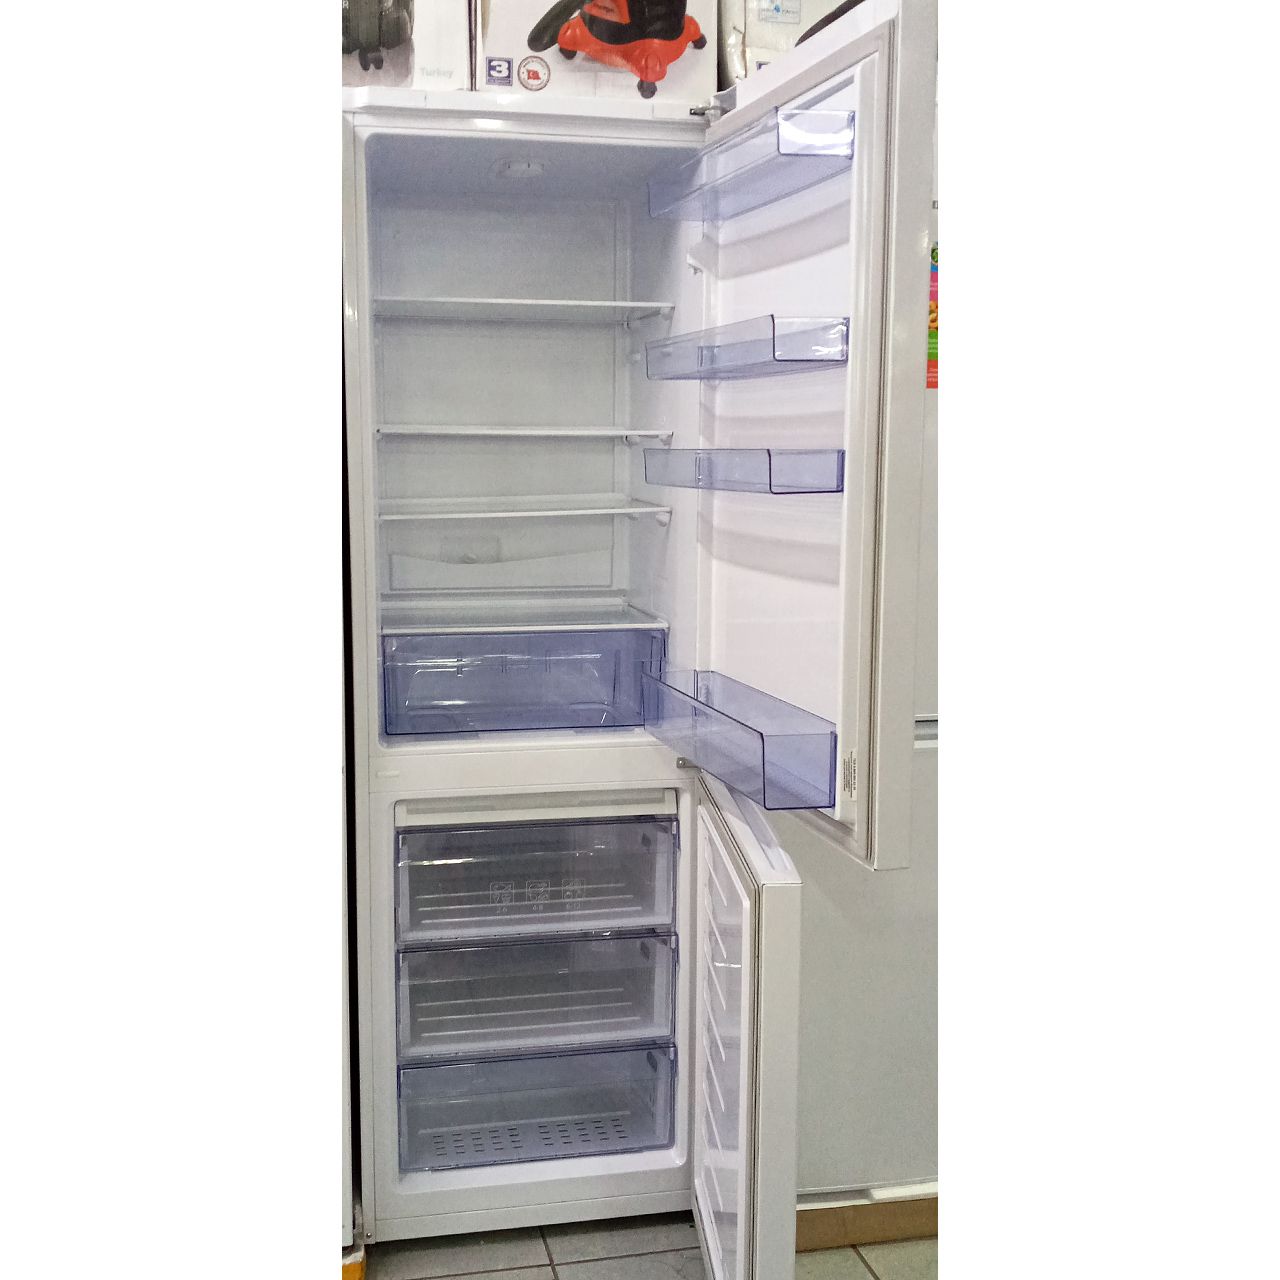 Холодильник двухкамерный Beko 292 литра (акция!)